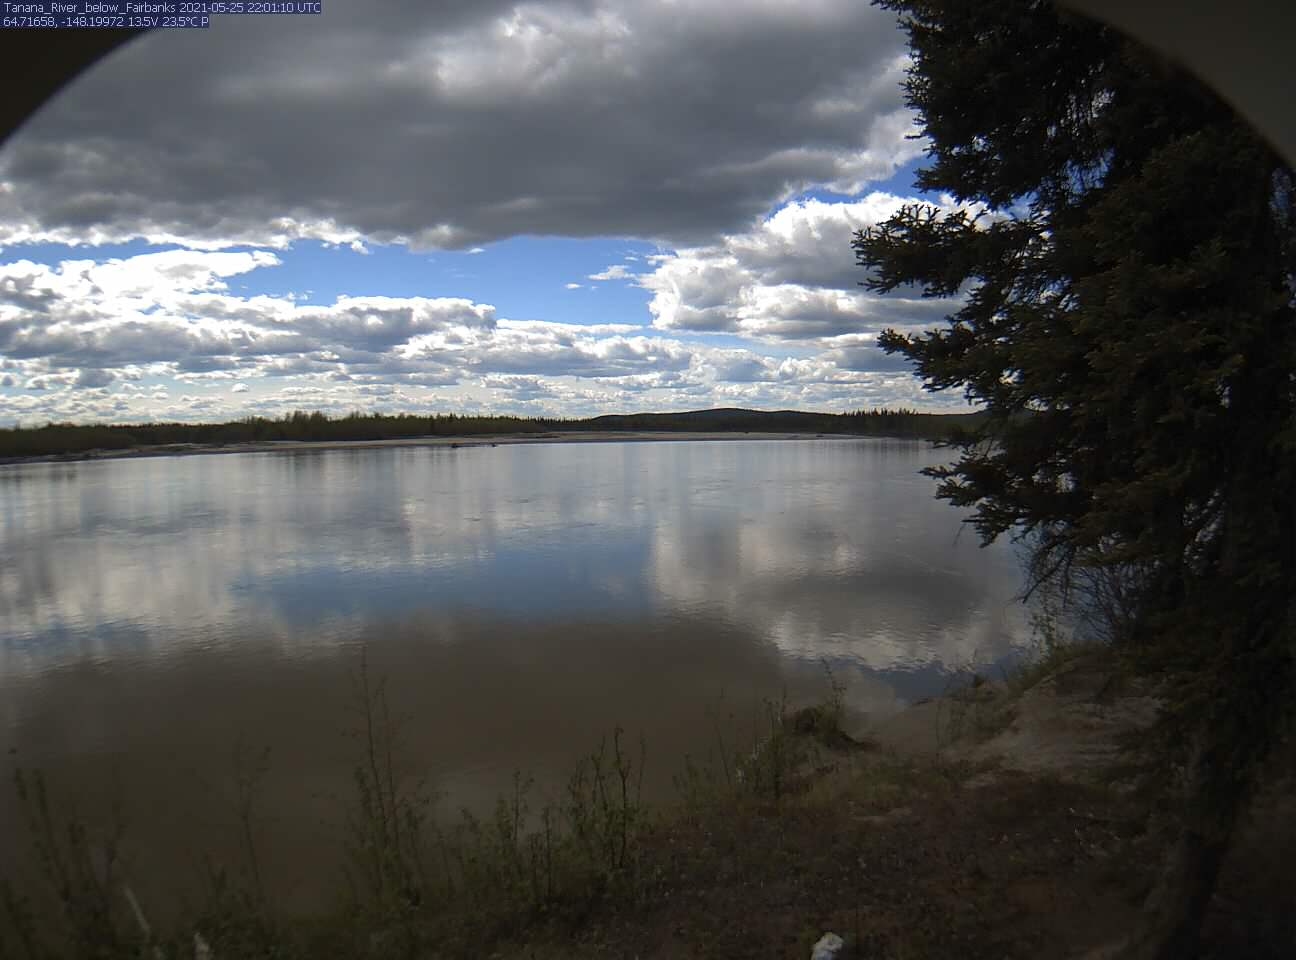 Tanana_River_below_Fairbanks_20210525220111.jpg